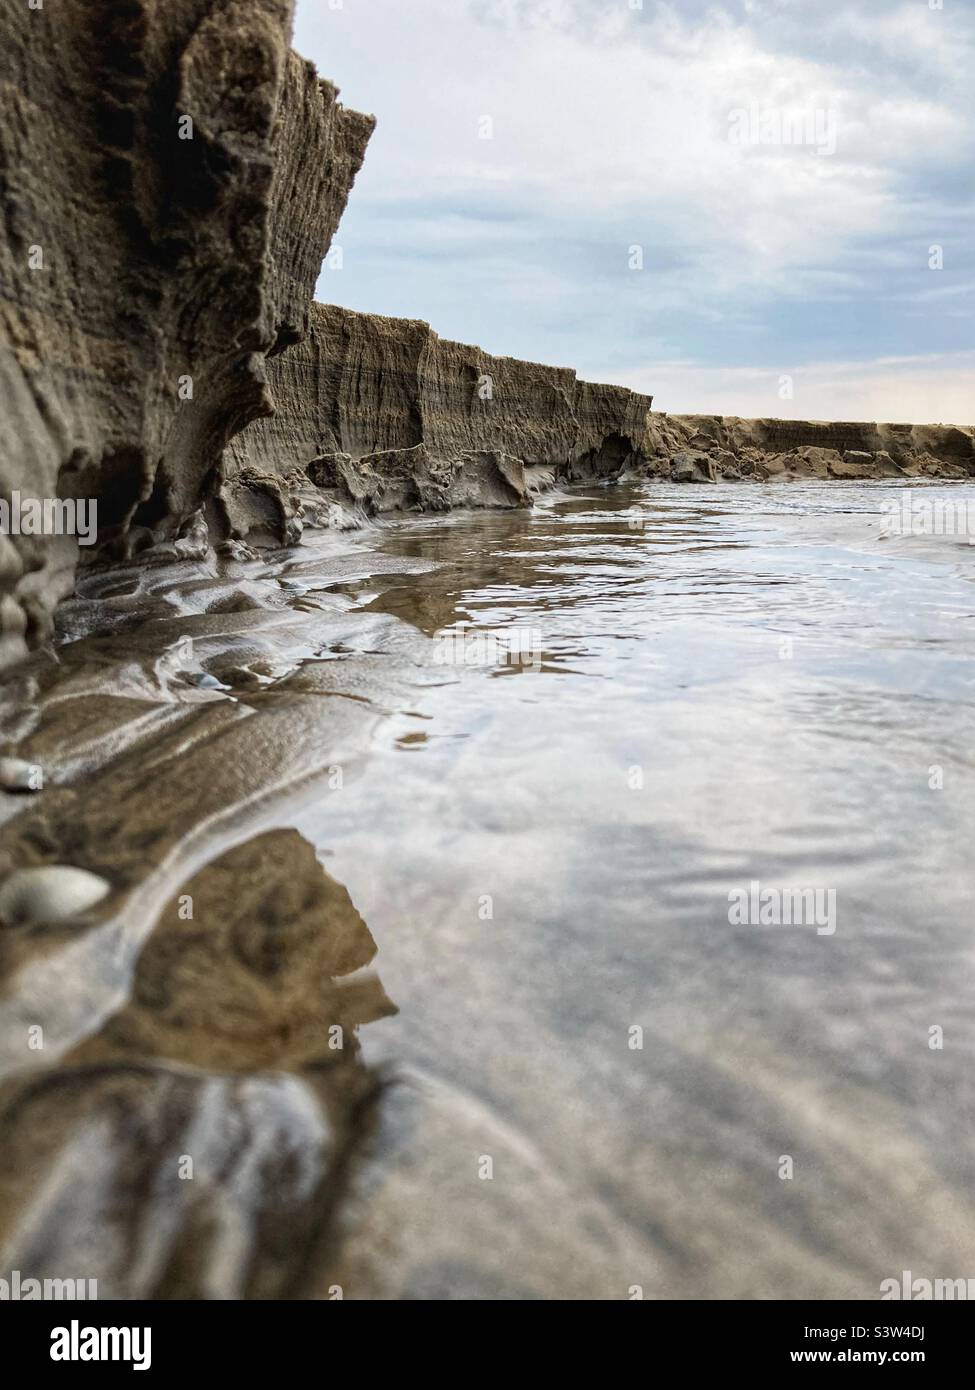 Primer plano de la escarpa de un pequeño río que cruza una playa y desemboca en el mar Báltico dando la impresión de ser un gran acantilado, de sólo unos 20 cm de altura en realidad Foto de stock